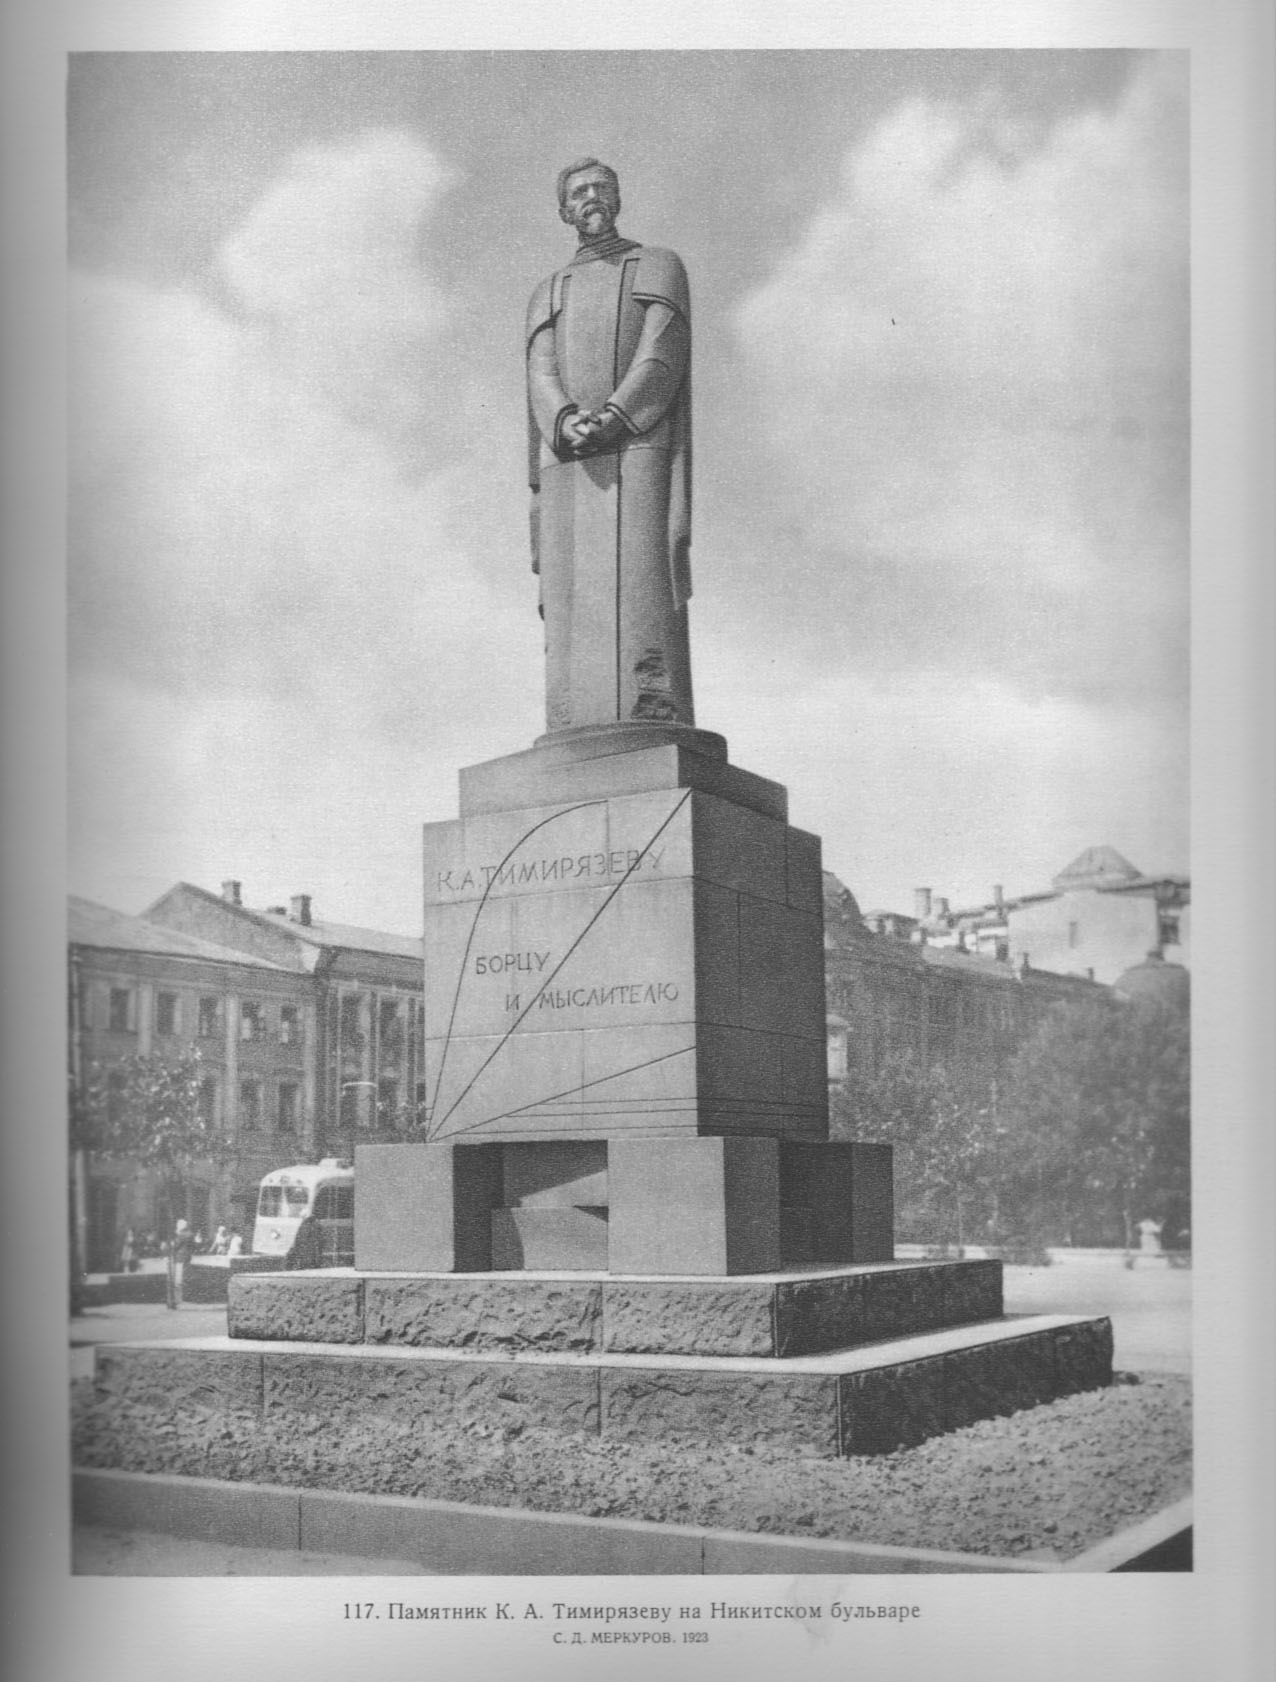 117. Памятник К. А. Тимирязеву на Никитском бульваре. С. Д. Меркуров. 1923